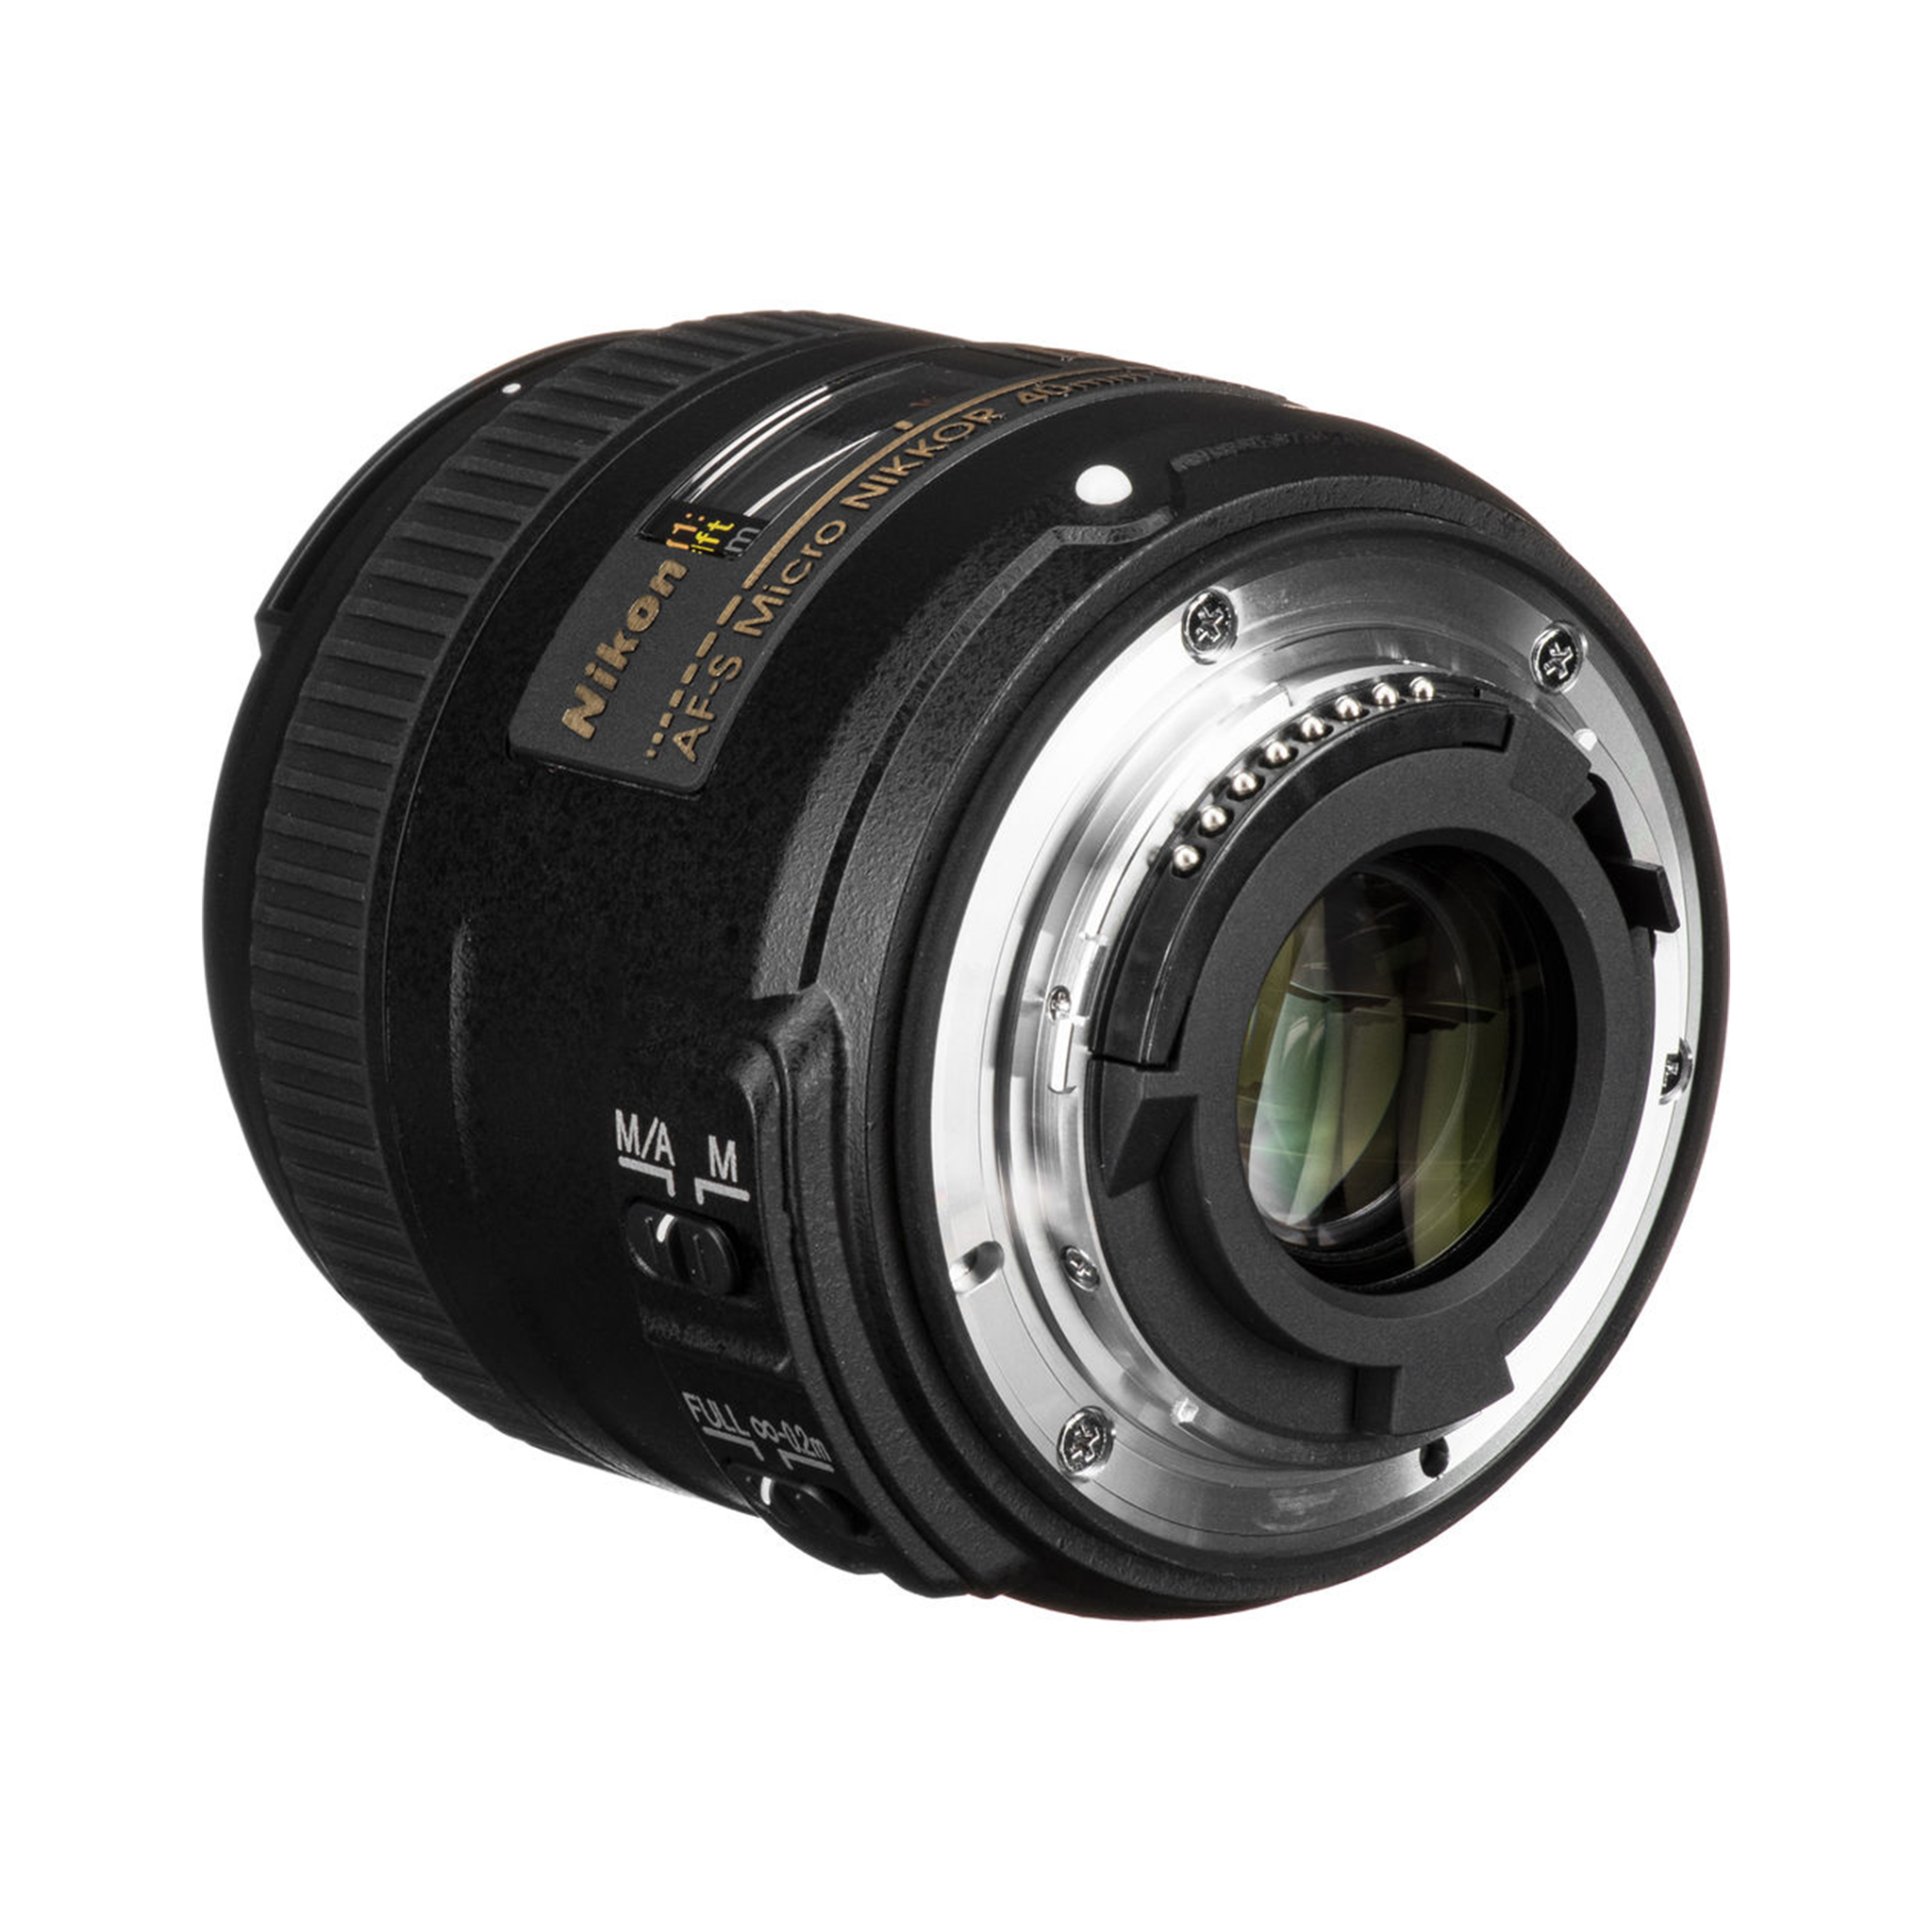 Nikon AF-S DX Micro NIKKOR 40mm f/2.8G lens-Camera Lenses-futuromic